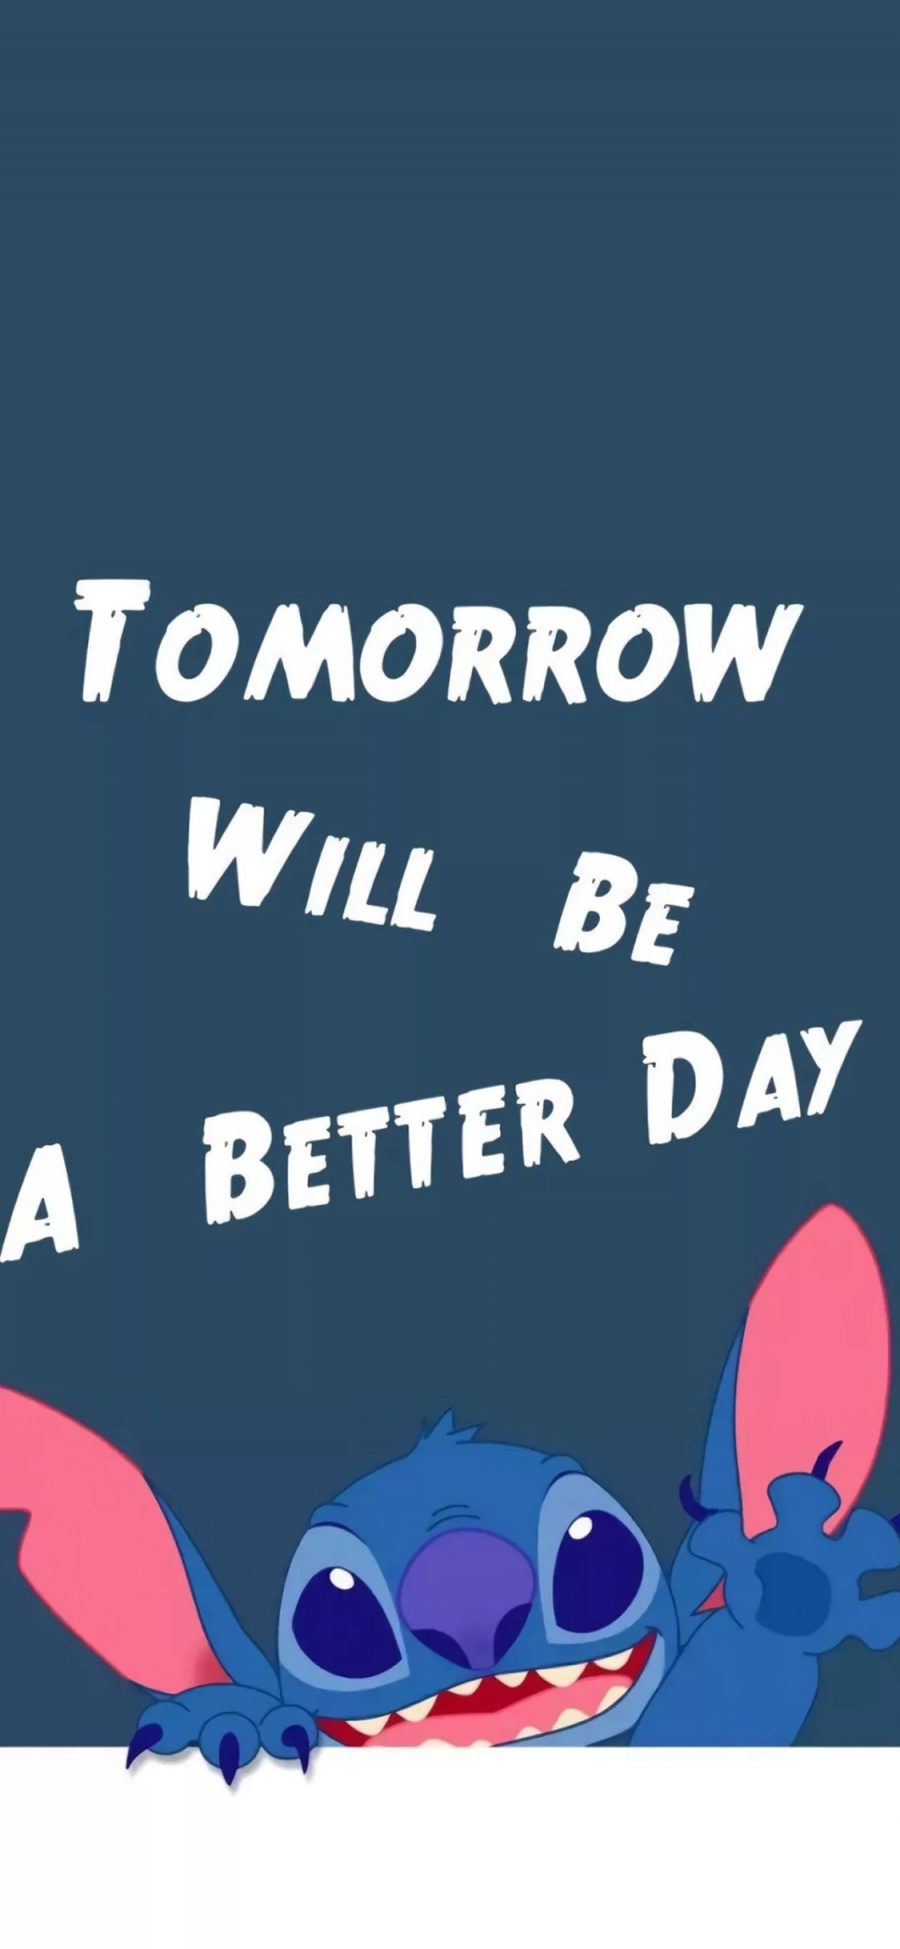 [2436×1125]星际宝贝 史迪仔 tomorrow will be a better day 苹果手机动漫壁纸图片